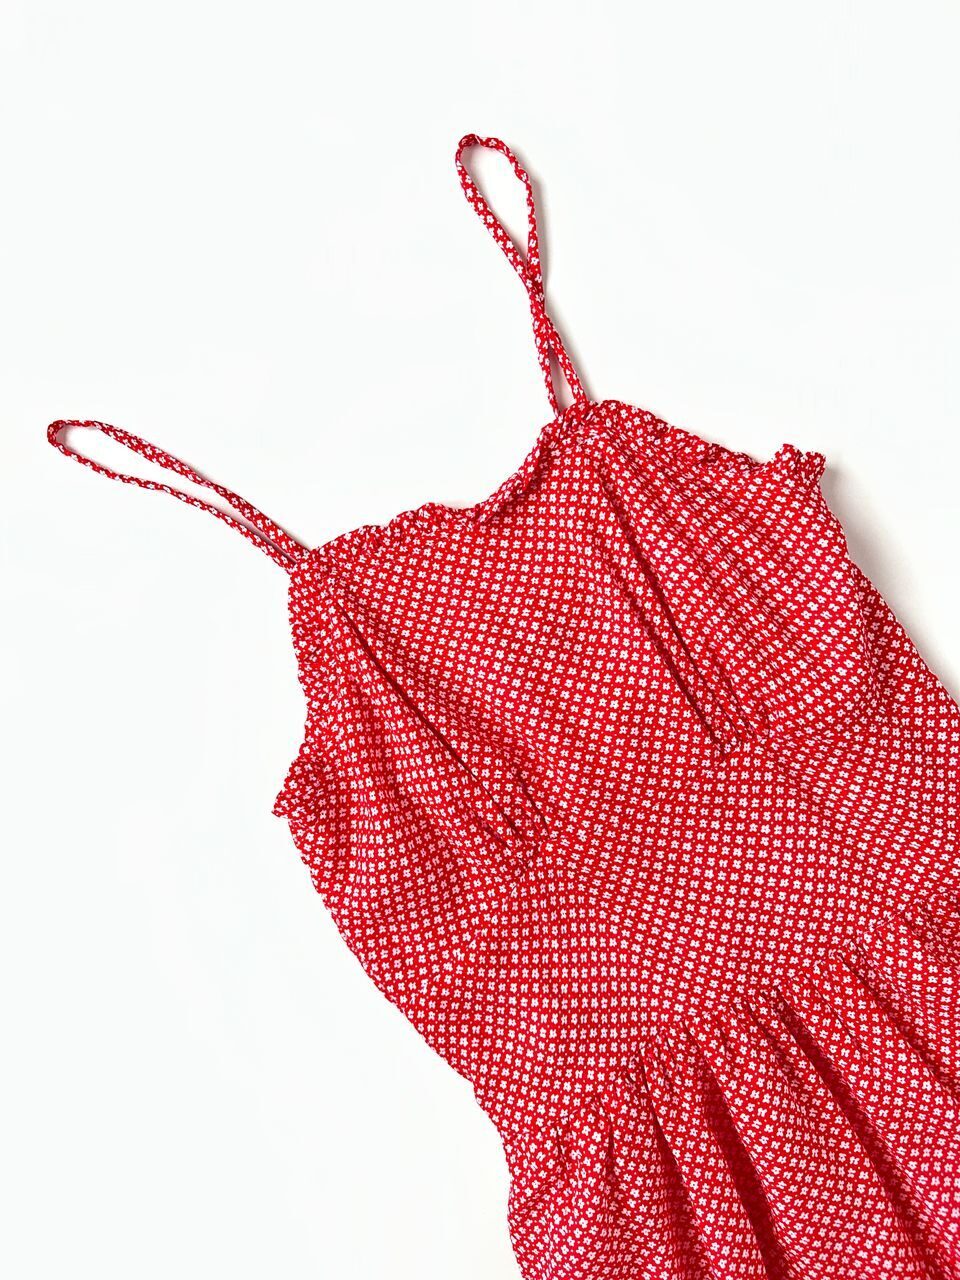 Платье на бретелях на подкладке красное с принтом цветы на рост 158 см Primark